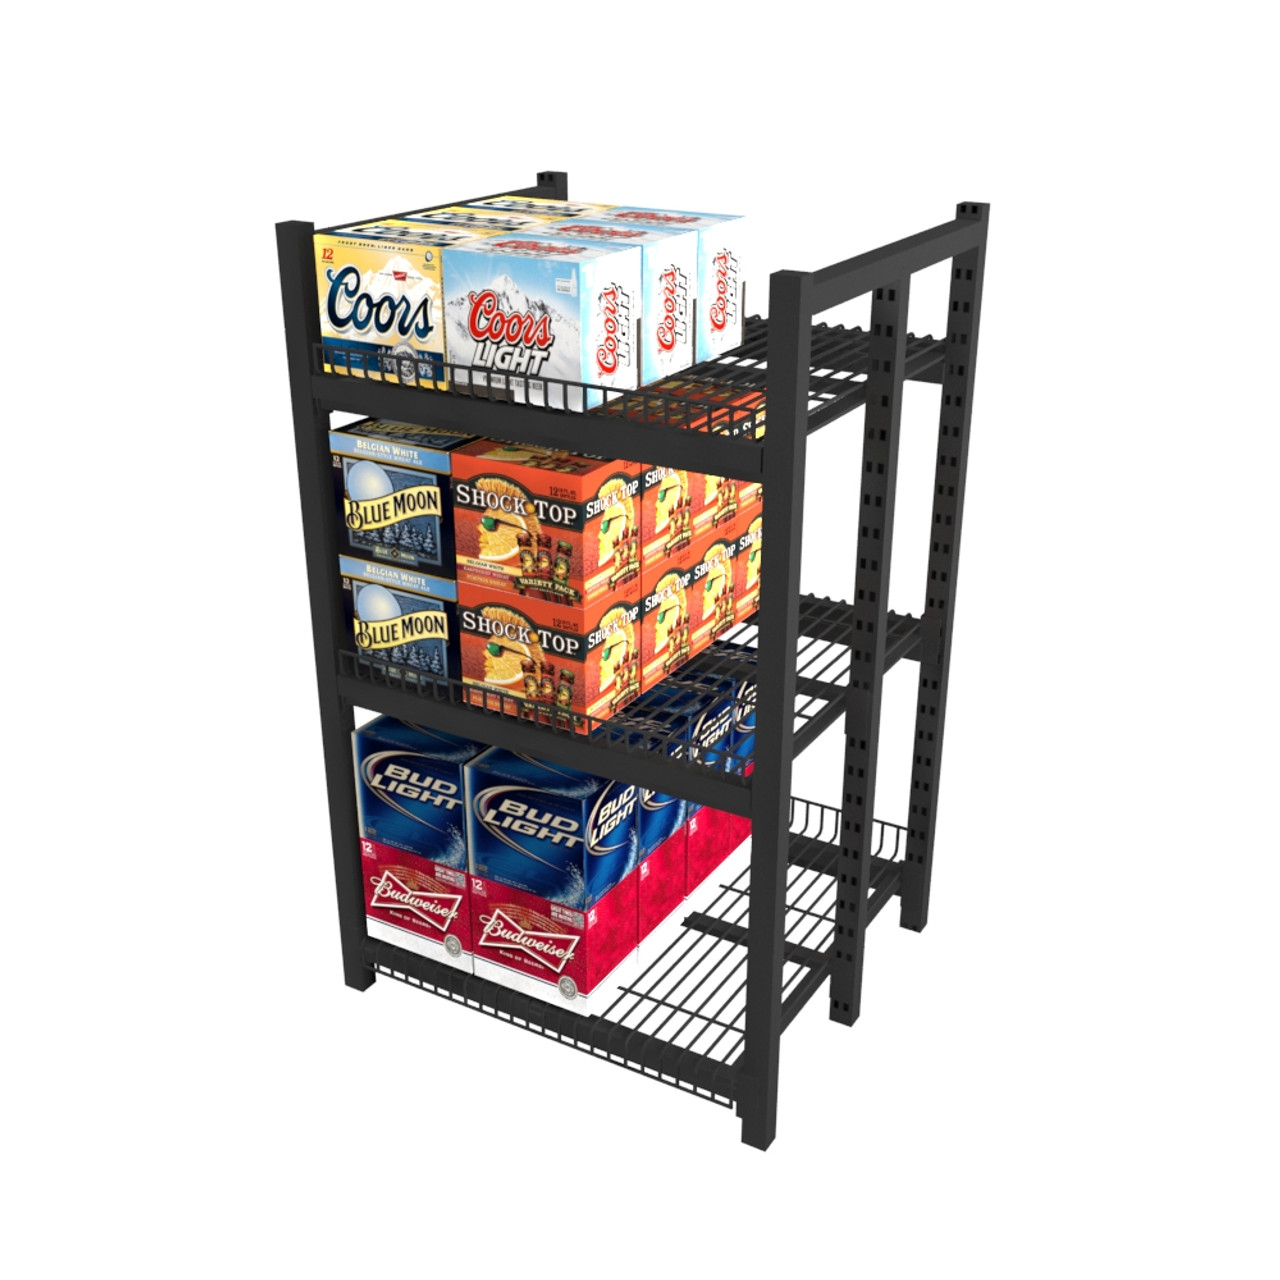 Shelves, Stackable Shelves & Shelving Units